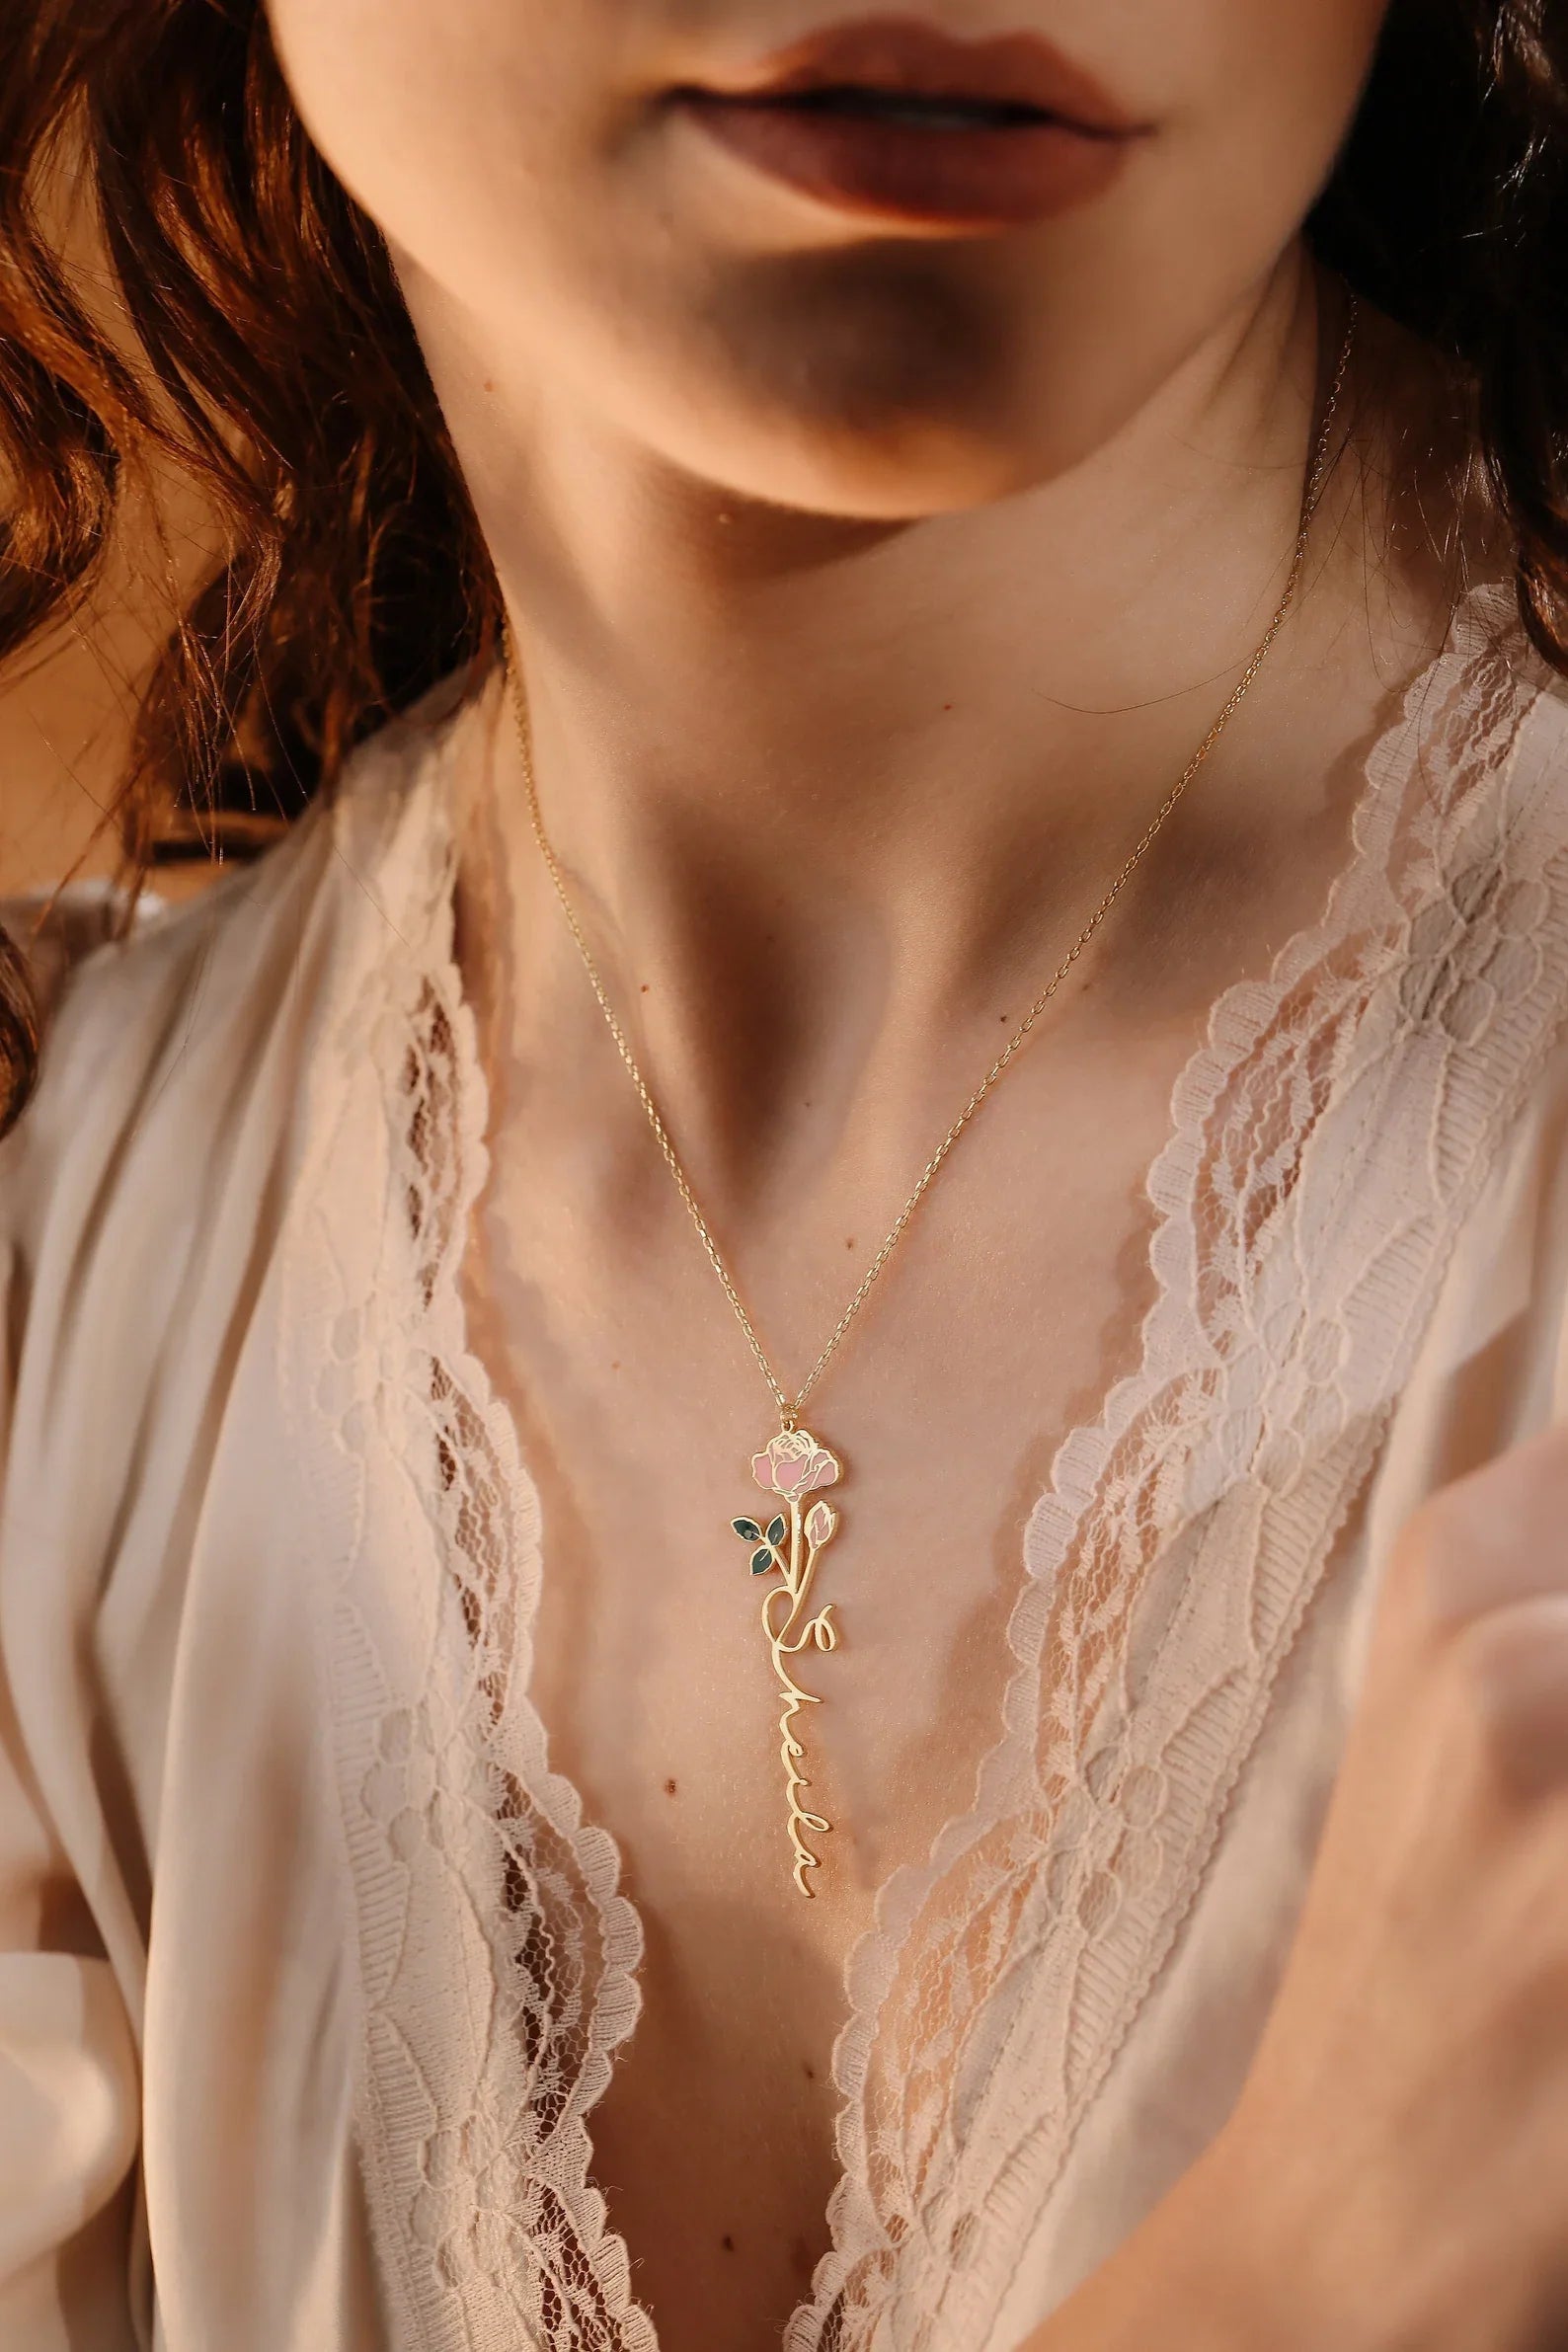 September Birth Flower Necklace | Gold, Rose Gold, Silver | Birth Flower Necklace Gold Filled / 1/2 / 20-22